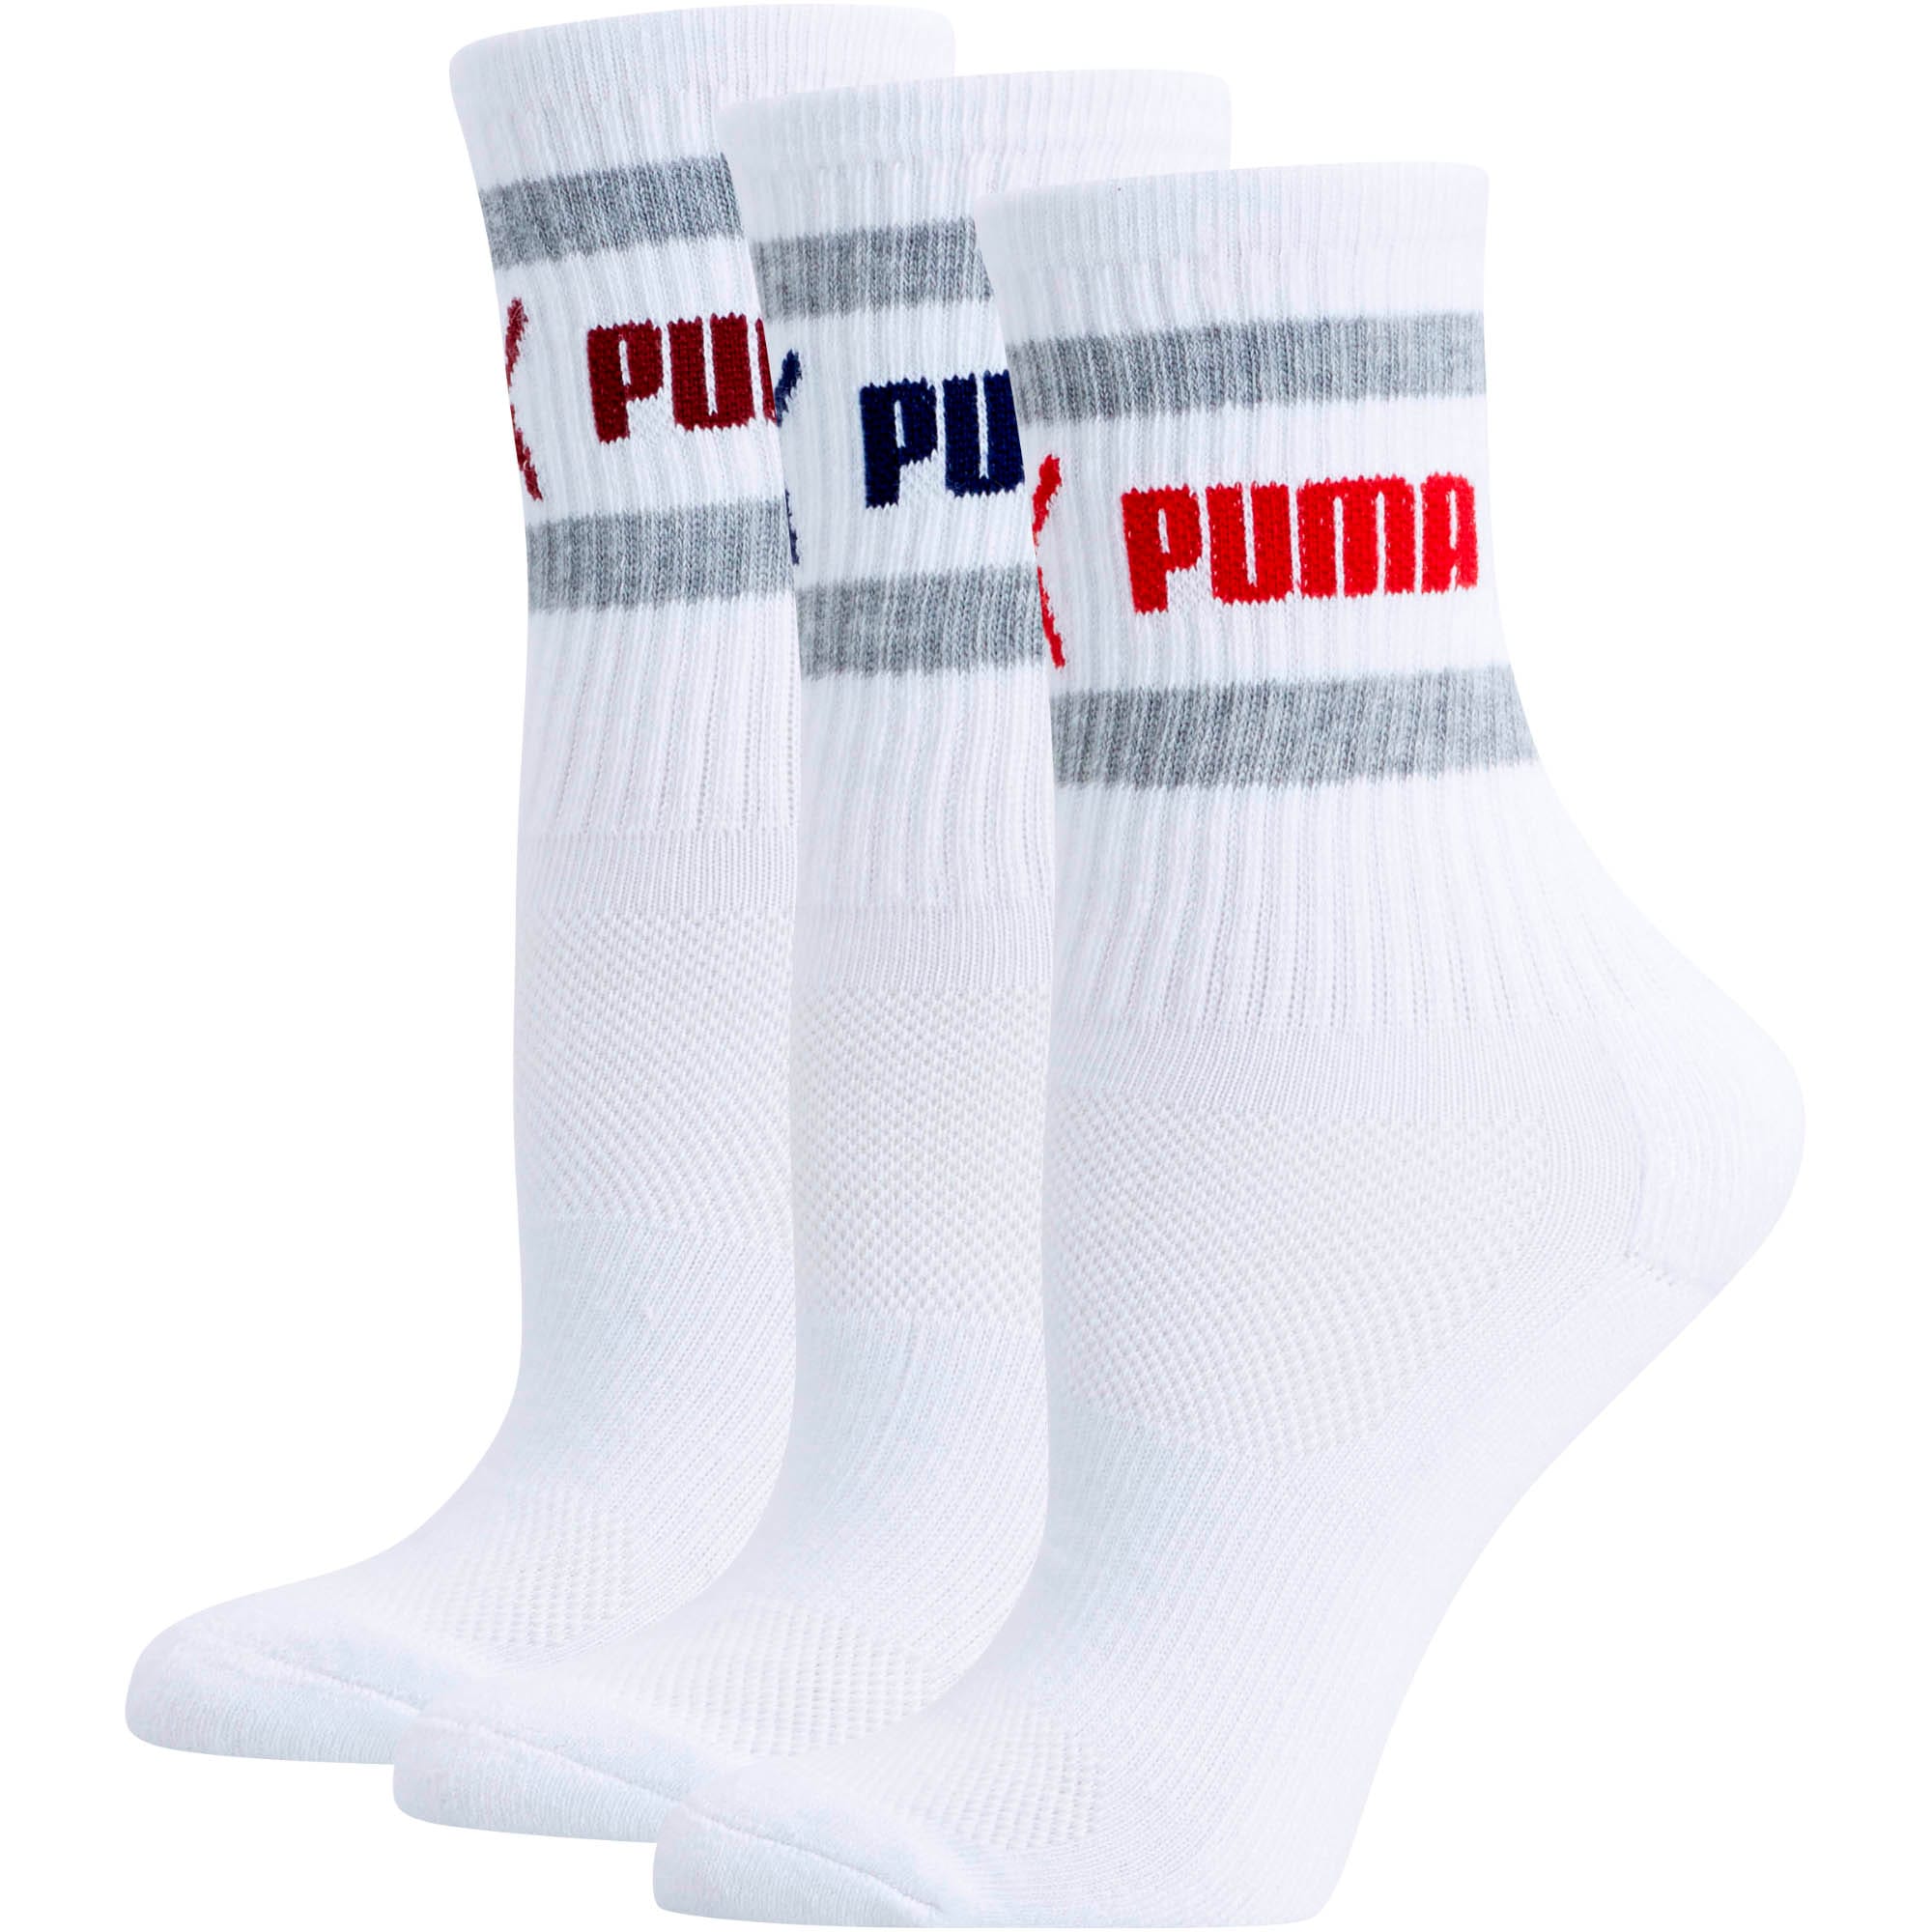 puma women's crew socks